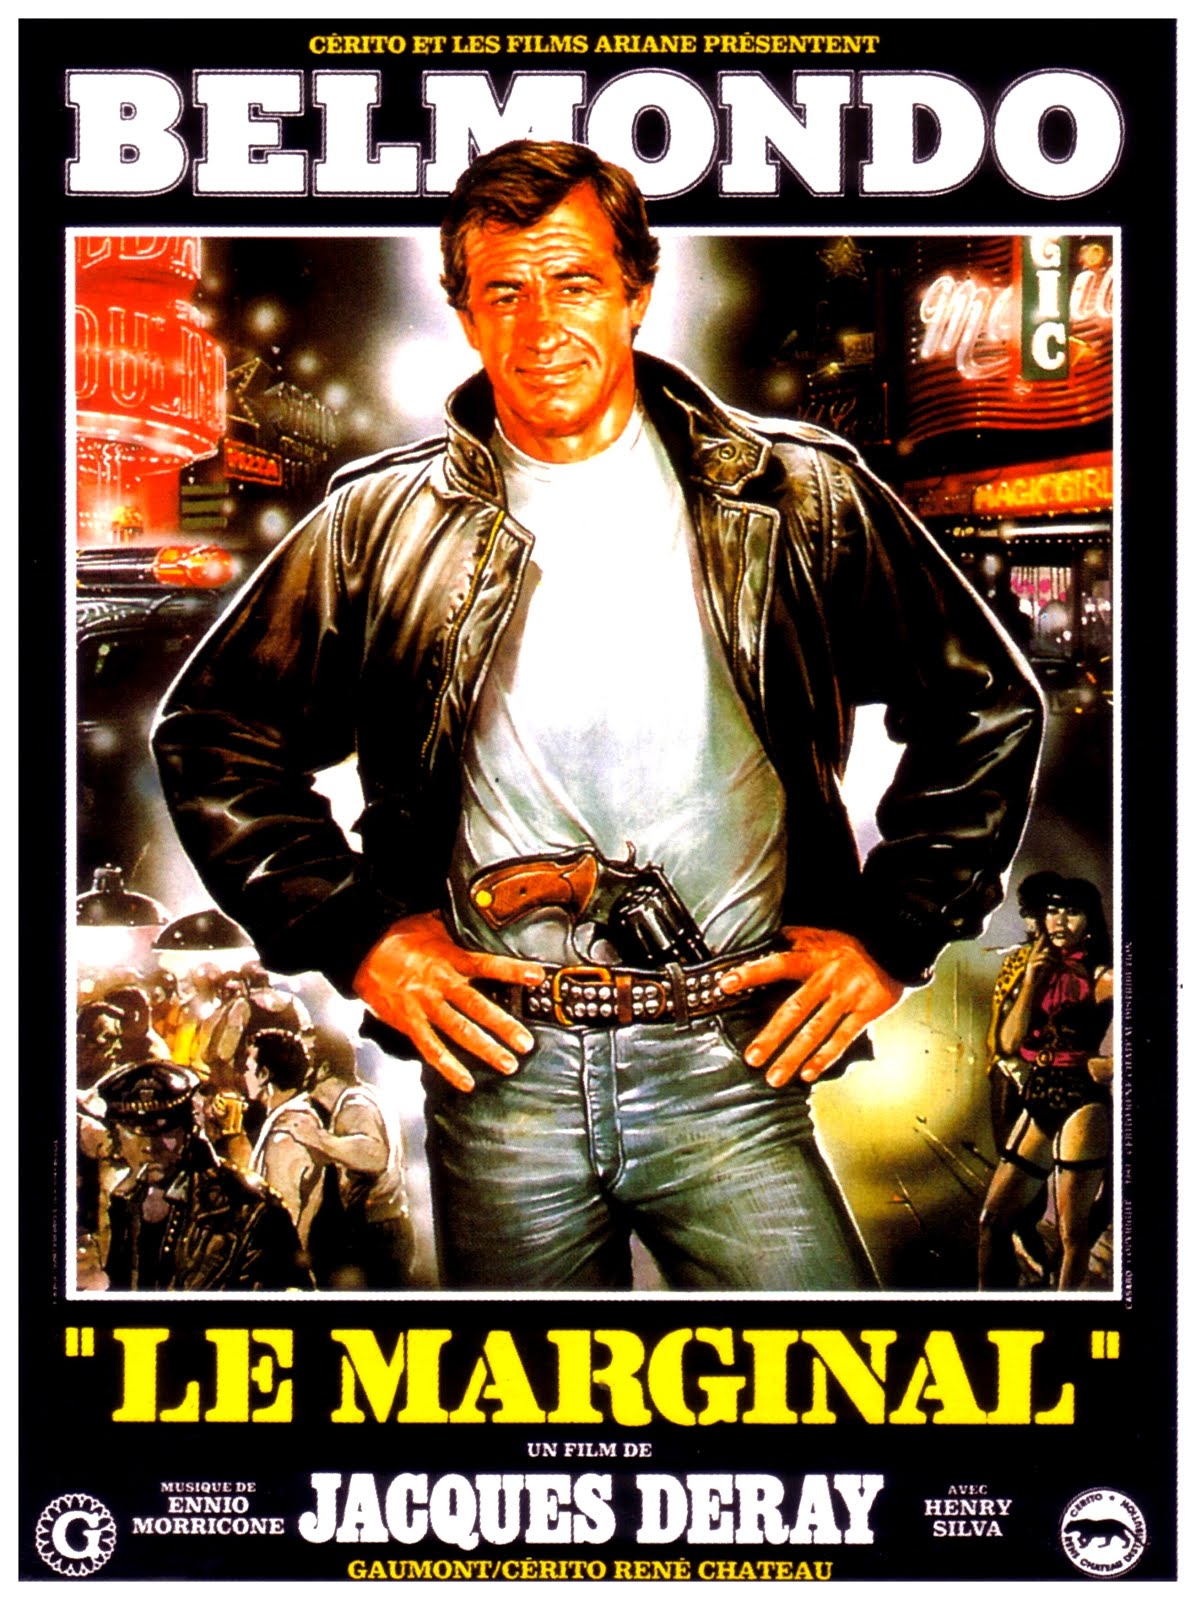 Le marginal (1983) Jacques Deray - Le marginal